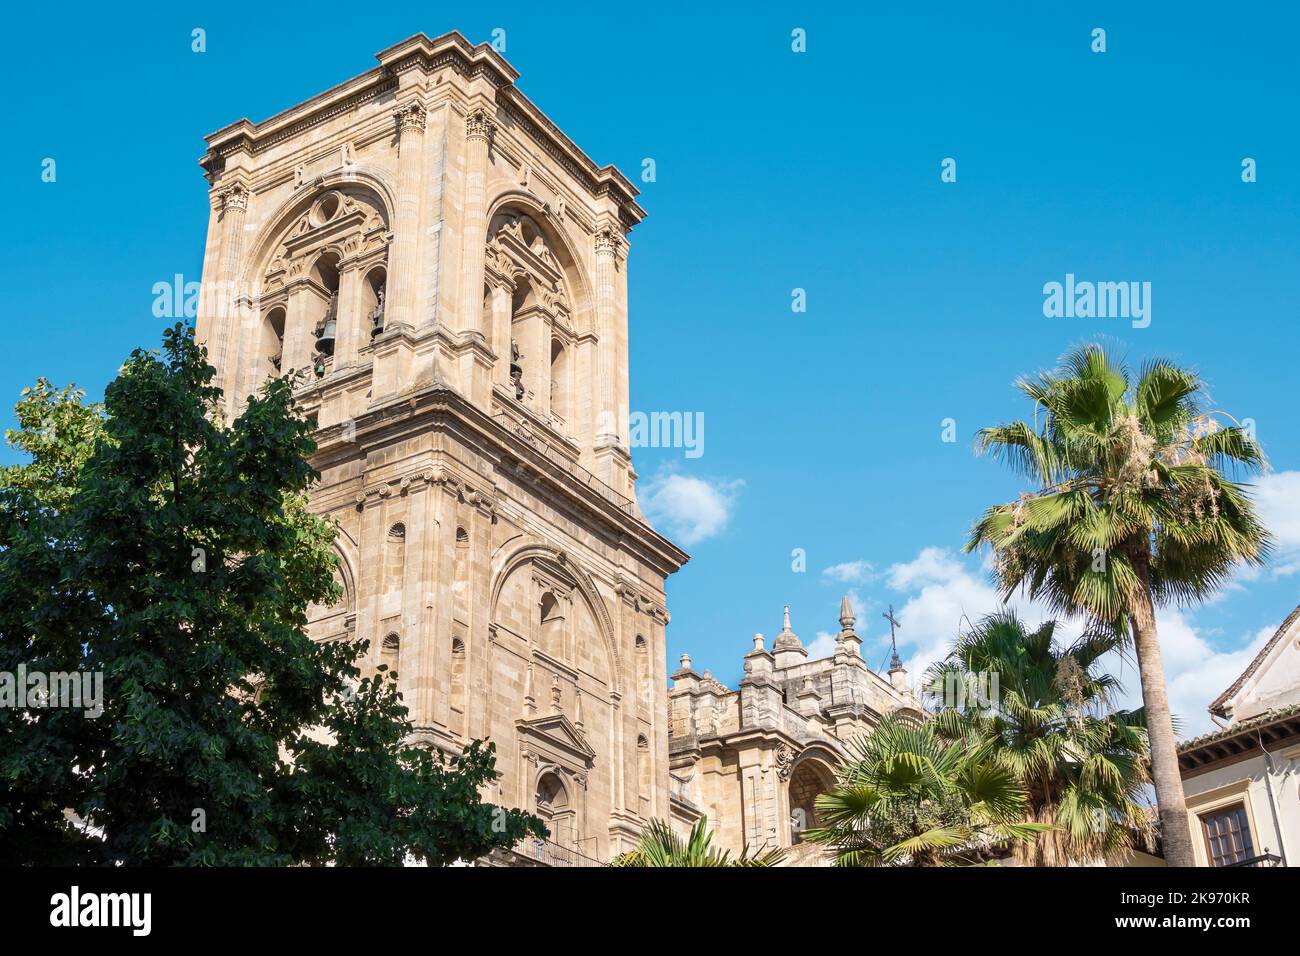 Campanario de la basÃlica catedral de Granada de estilo renacimiento y barroco siglo XVI, EspaÃ±a Stock Photo